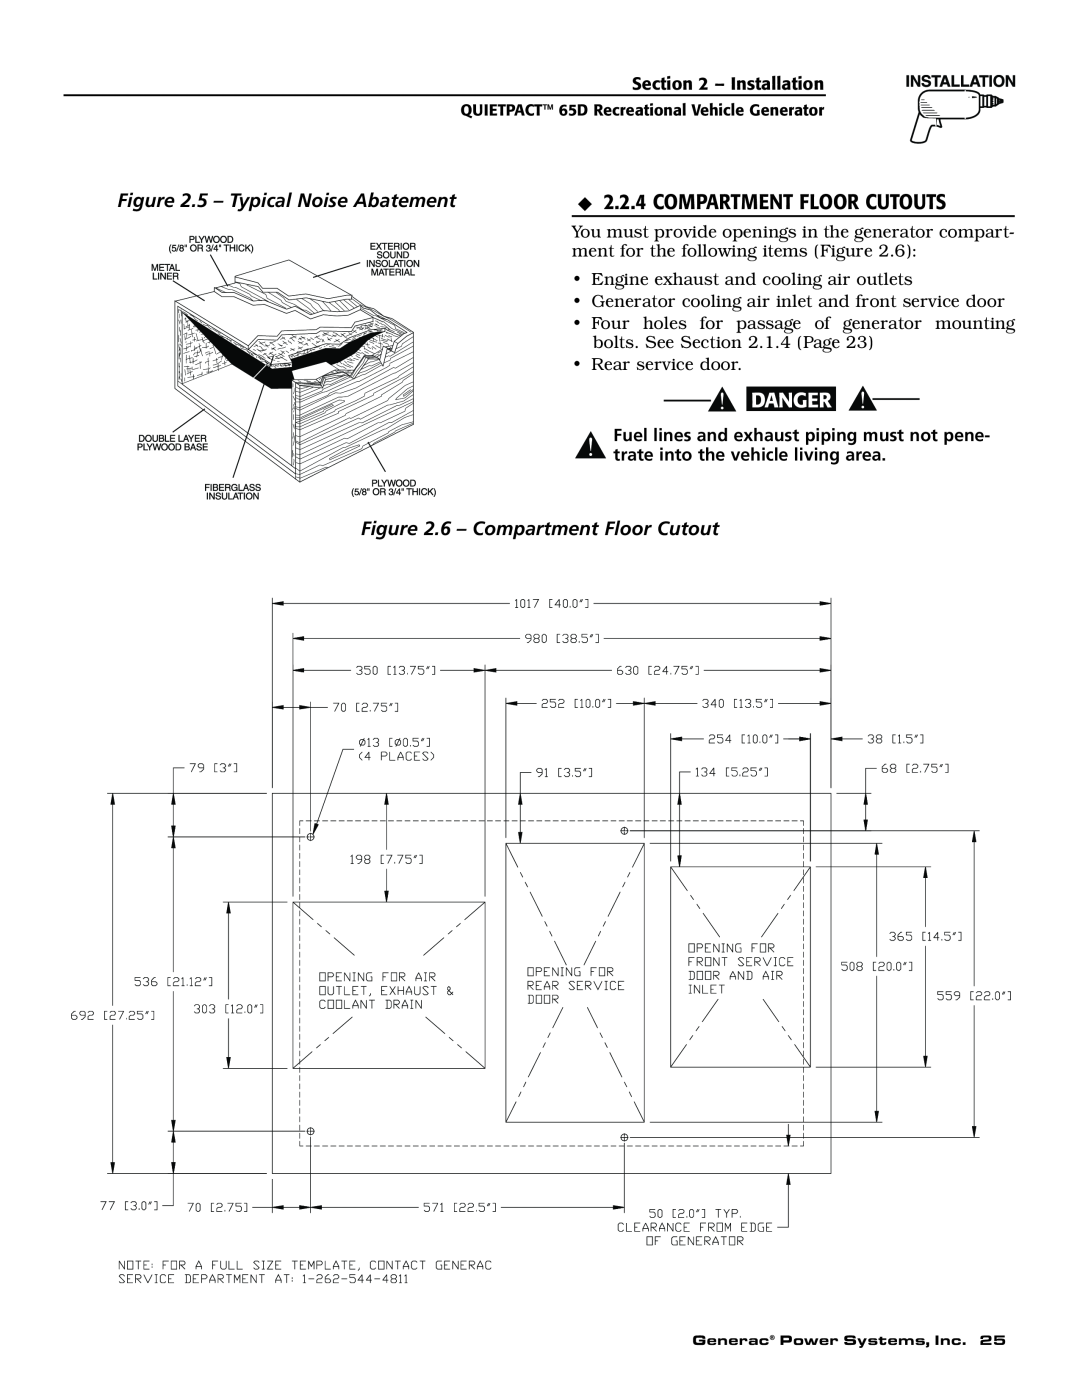 Generac 004614-1 owner manual Compartment Floor Cutouts, 5 - Typical Noise Abatement, 6 - Compartment Floor Cutout 